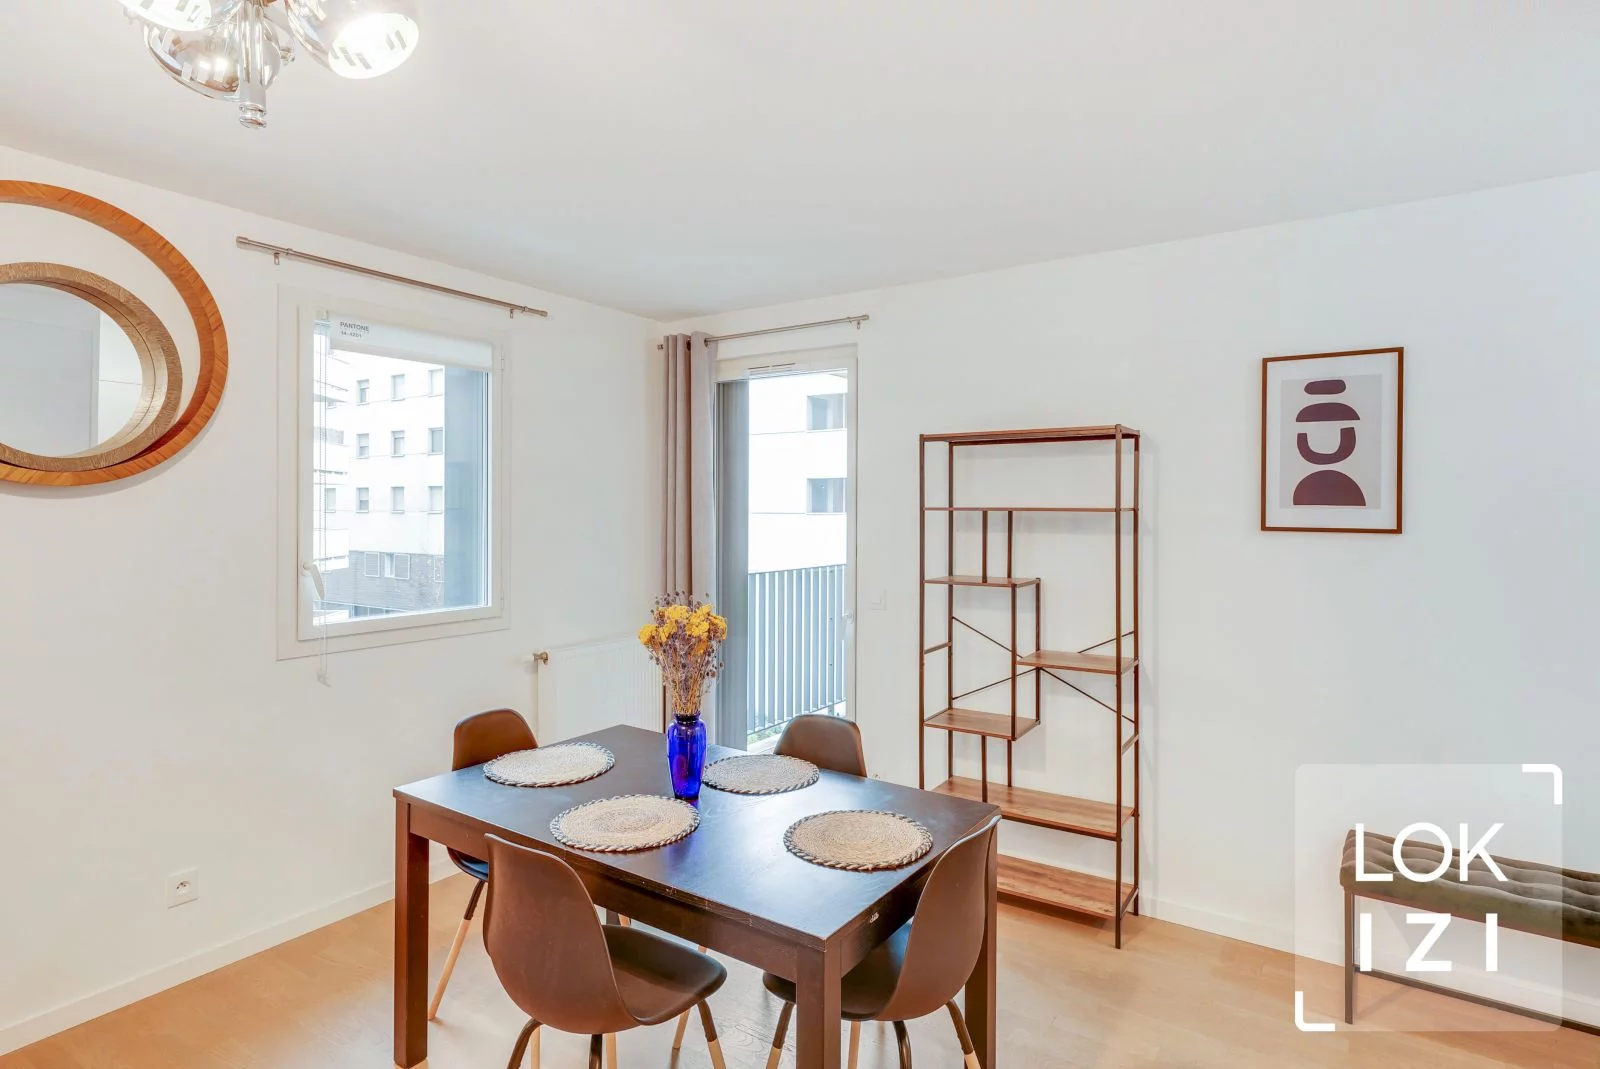 Location appartement meublé 3 pièces 63m² (Bordeaux - Bassins à flot)